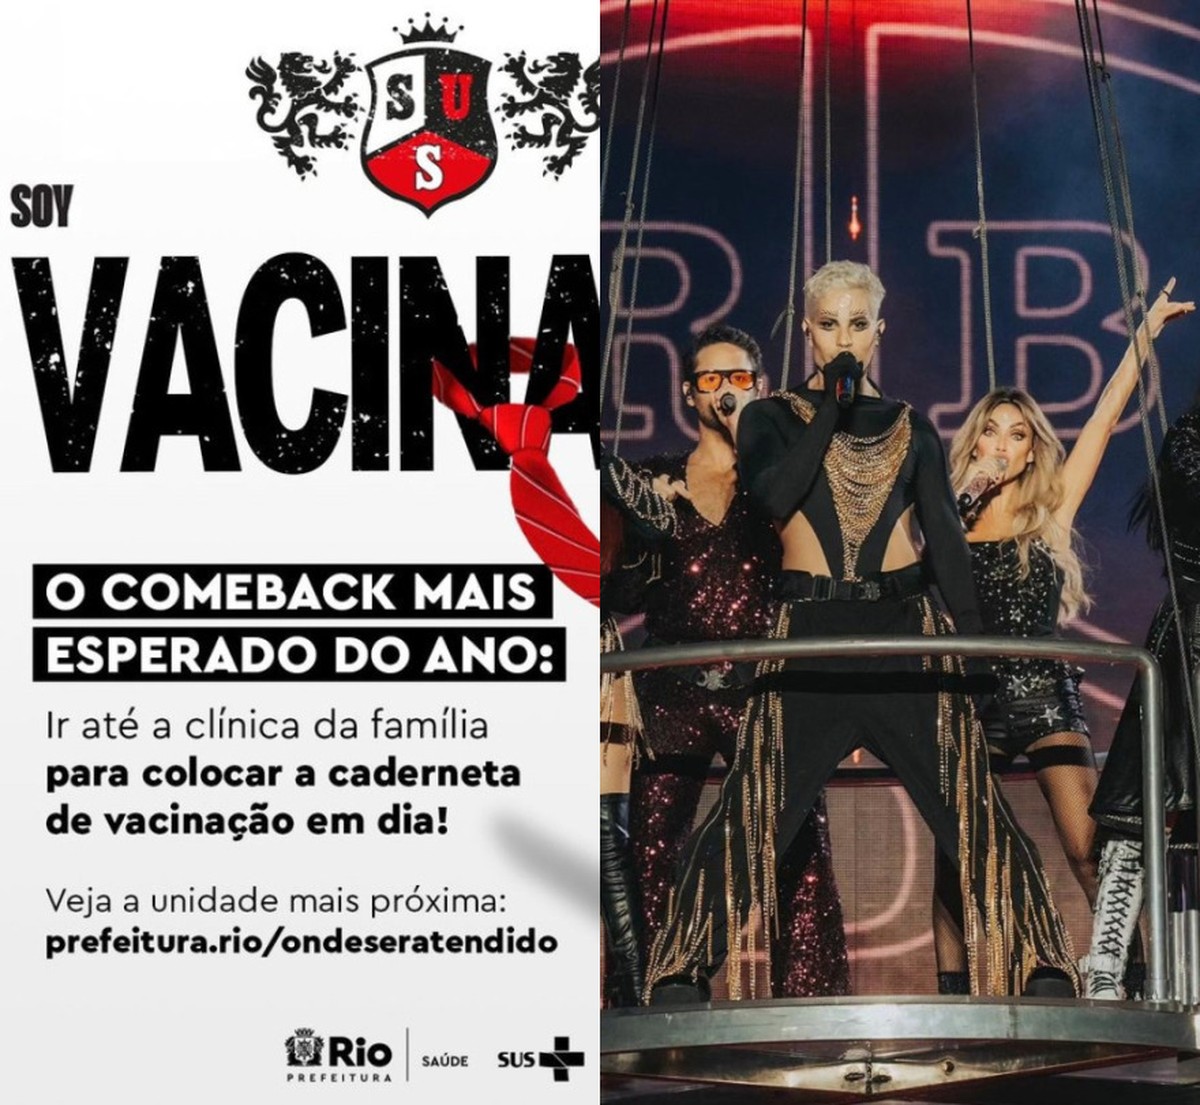 Ayuntamiento de Río utiliza RBD para promover vacunación, pero grupo tiene miembro antivacunas |  Música